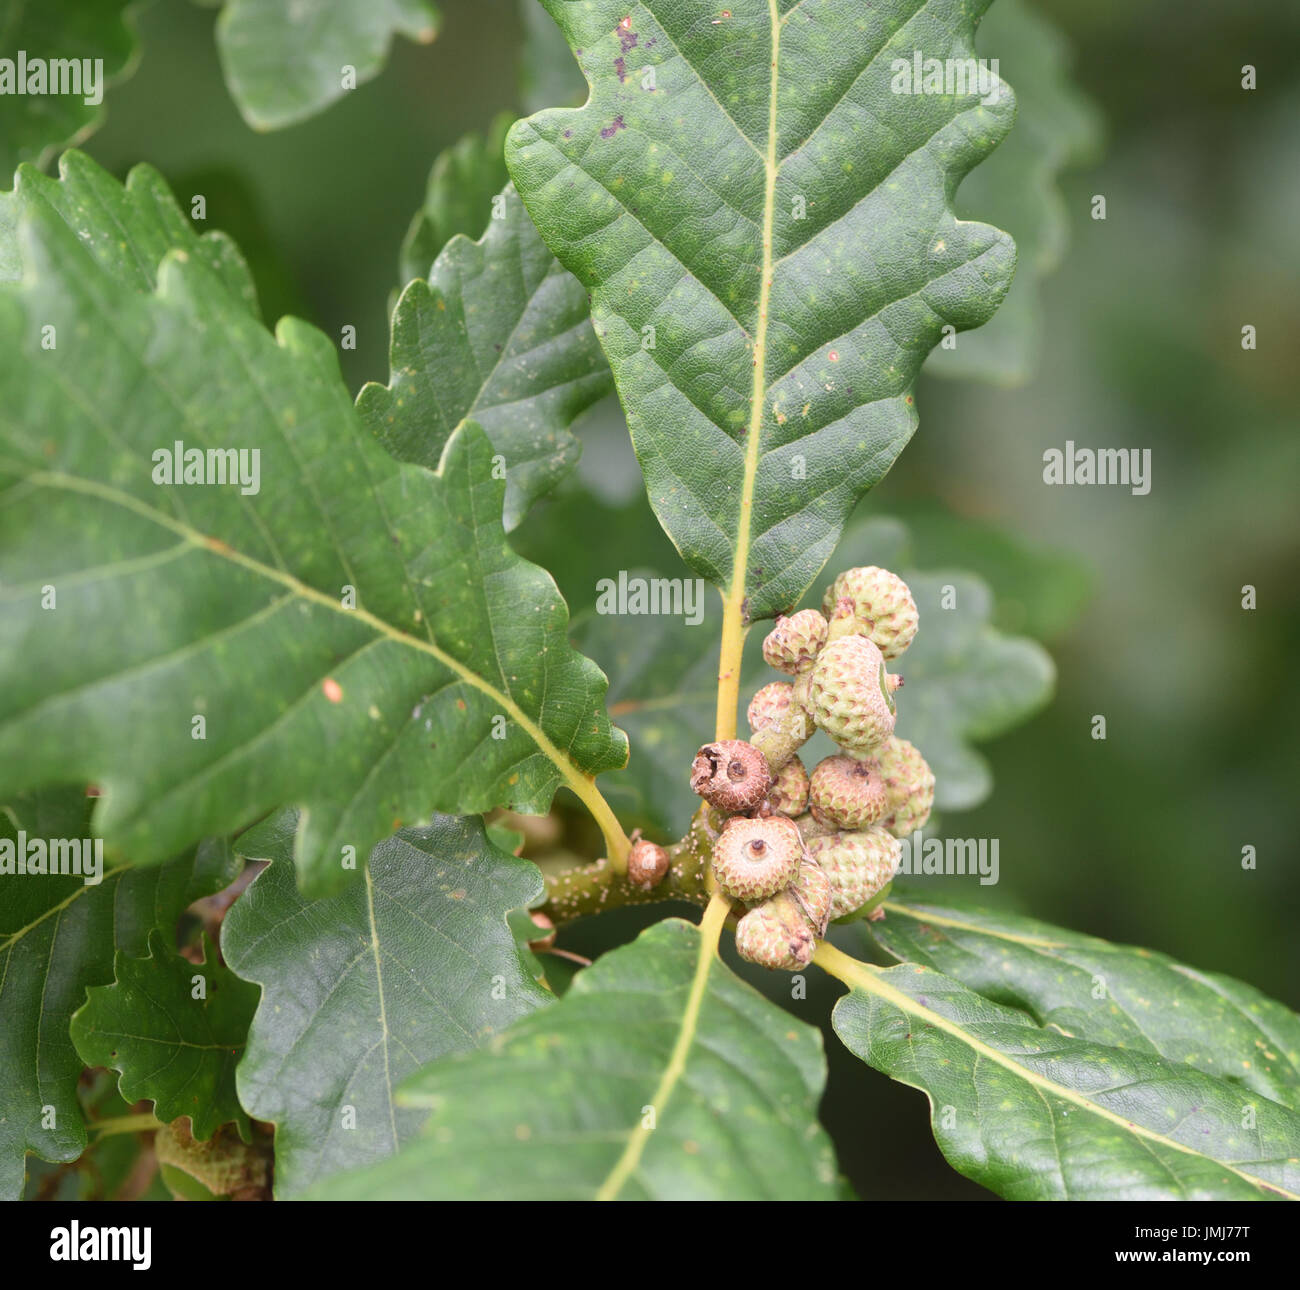 Les glands immatures nouvellement formé sur une commune ou pédonculé (Quercus robur). Bedgebury Forêt, Kent, UK. Banque D'Images